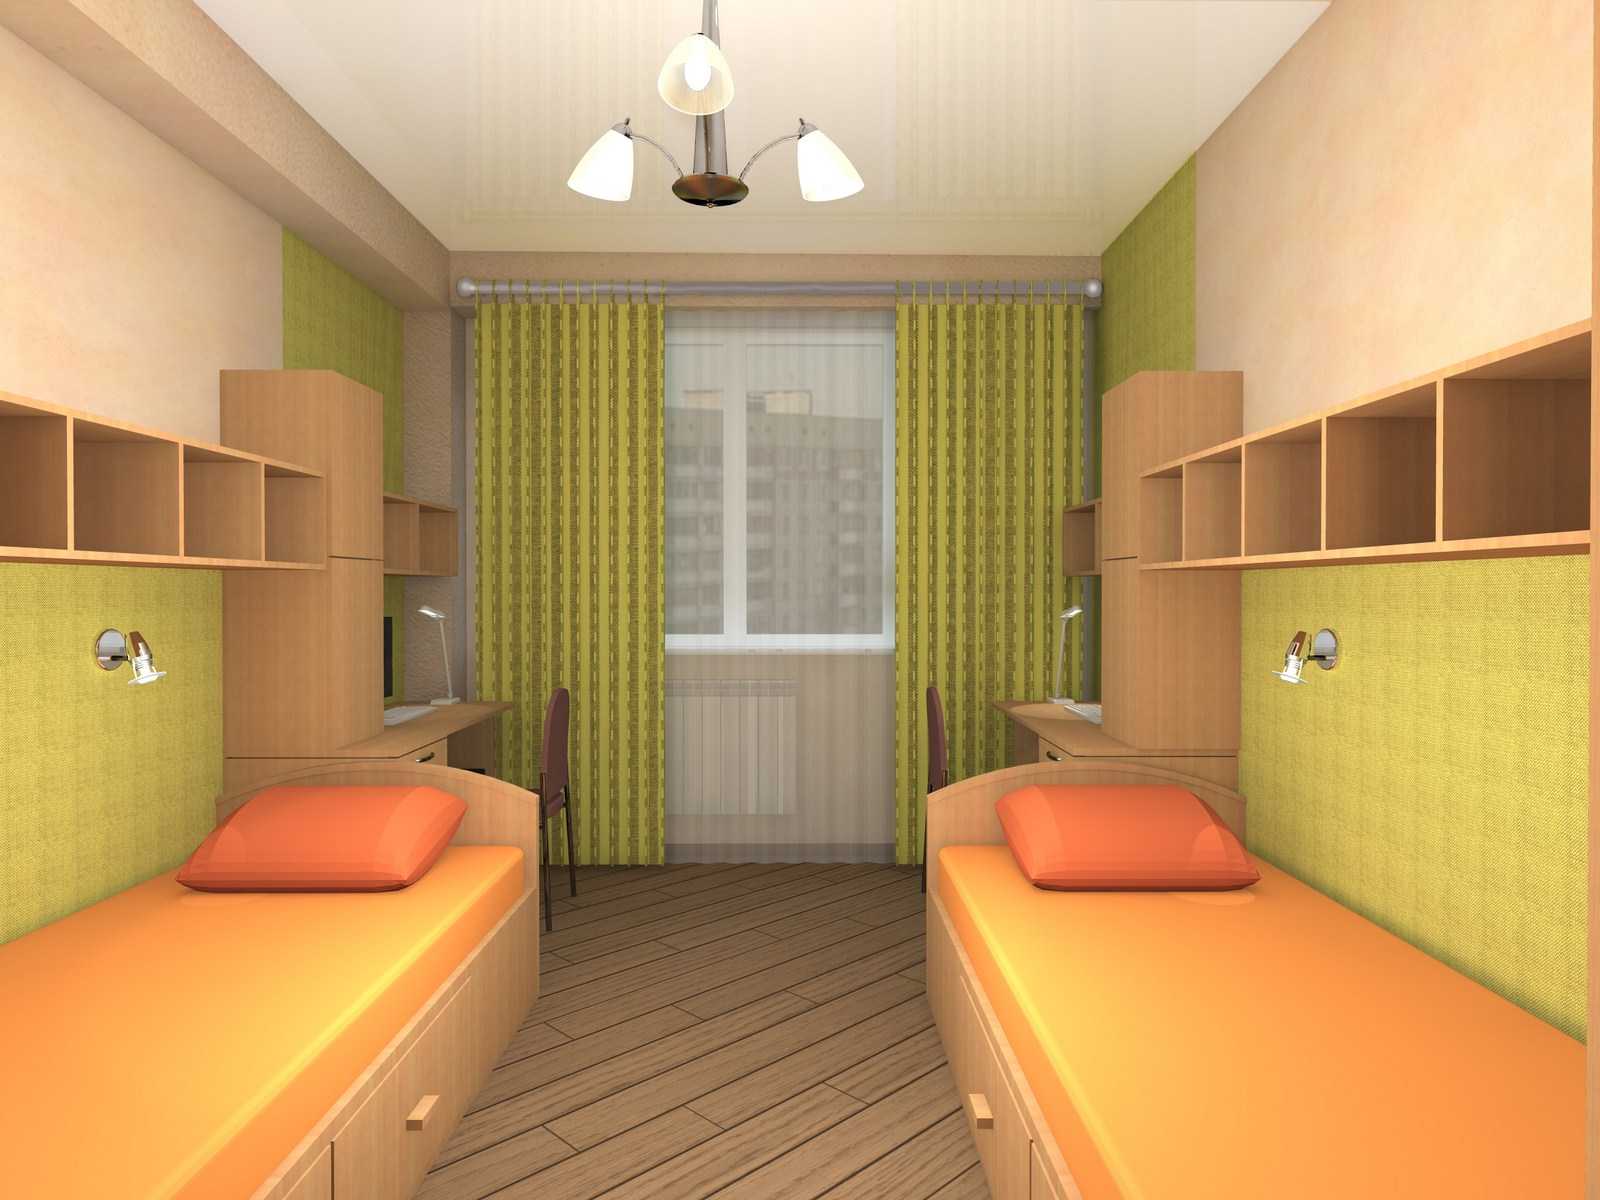 75 идей дизайн детской комнаты для двух мальчиков с фото